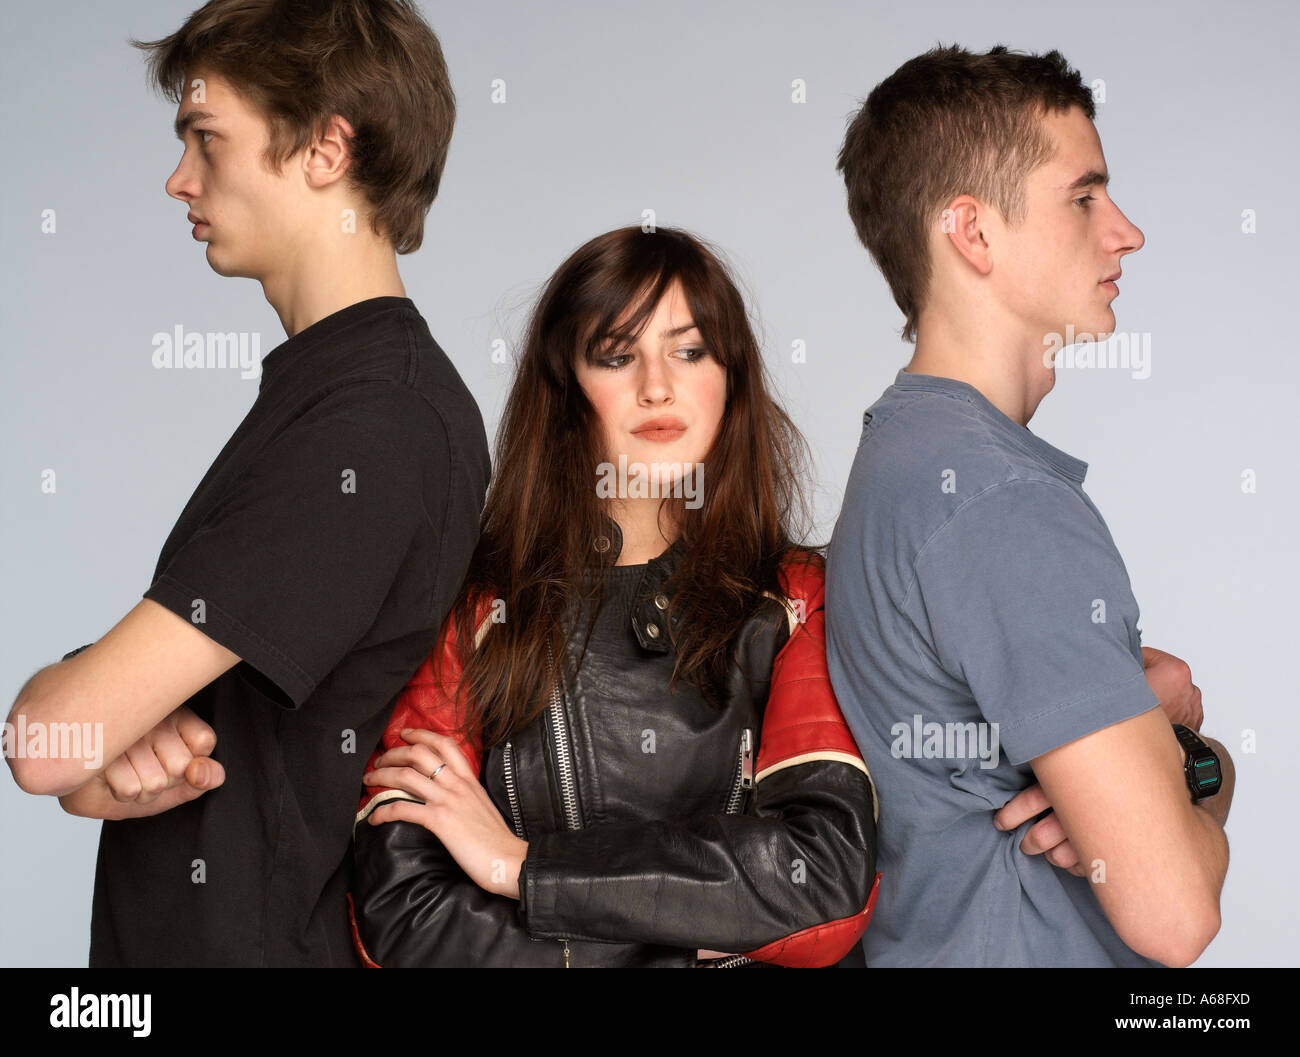 Jeune femme debout au milieu de deux jeunes hommes, les bras croisés Banque D'Images